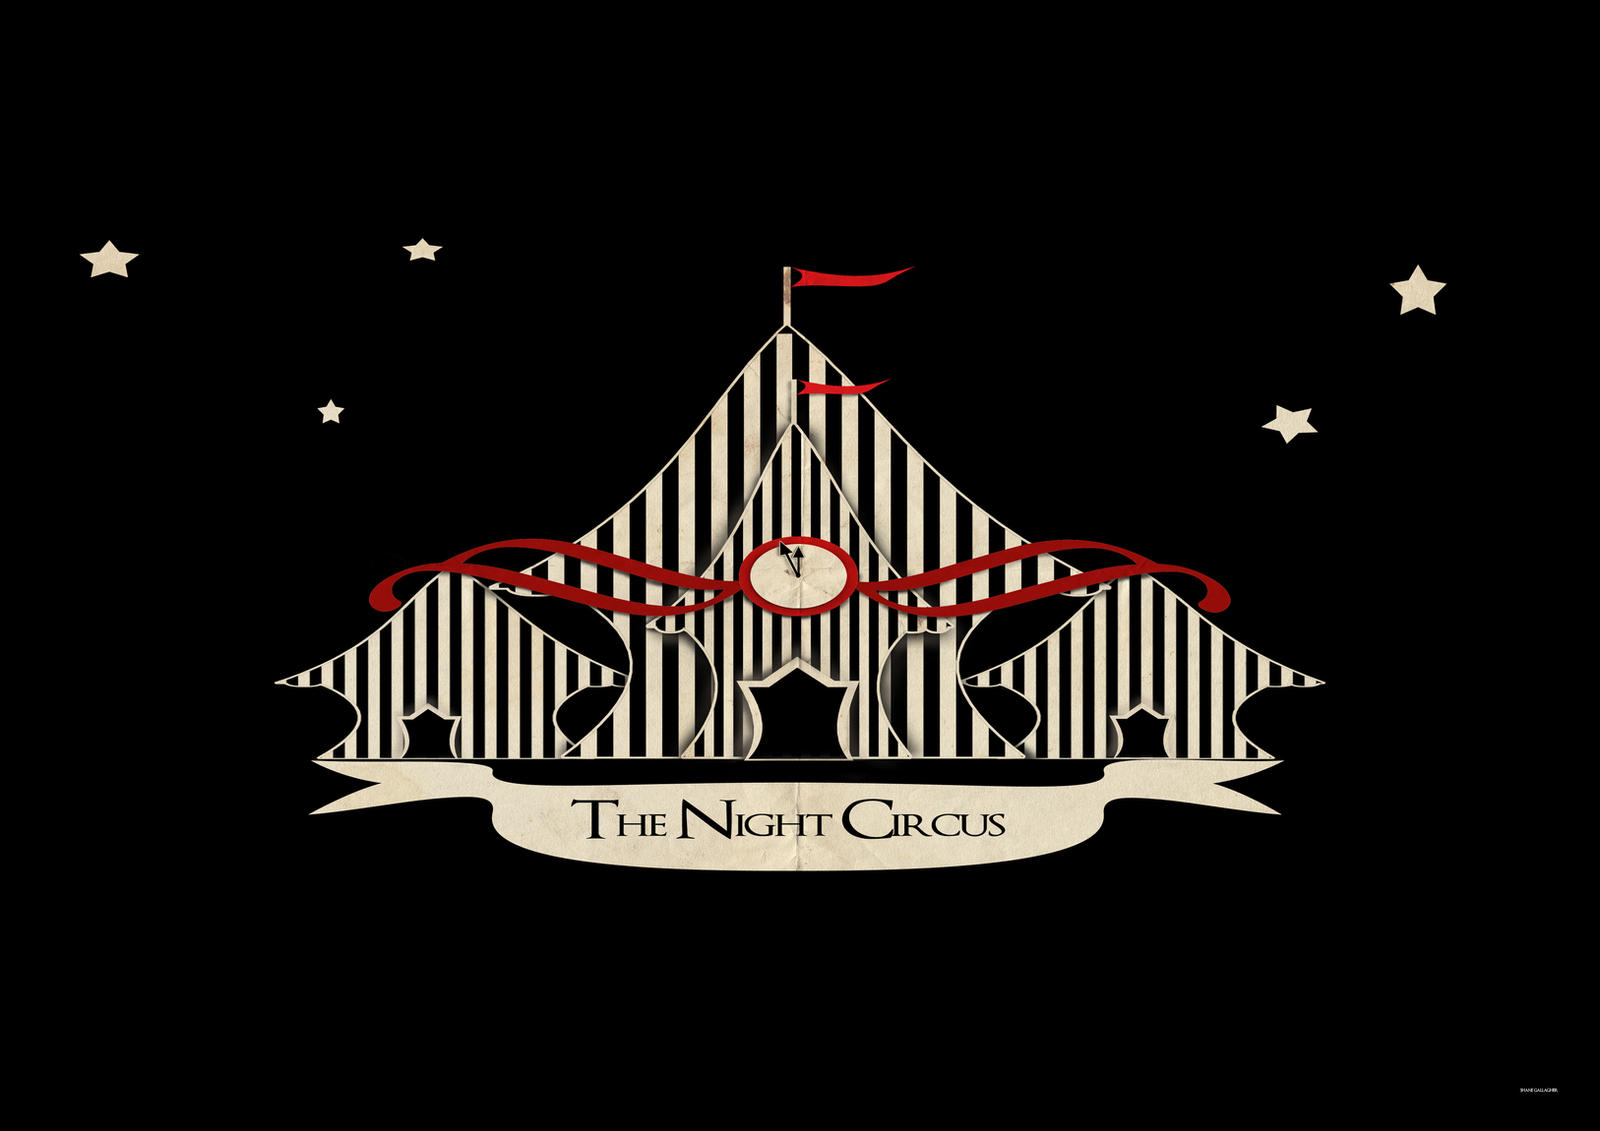 The Night Circus - Wikipedia